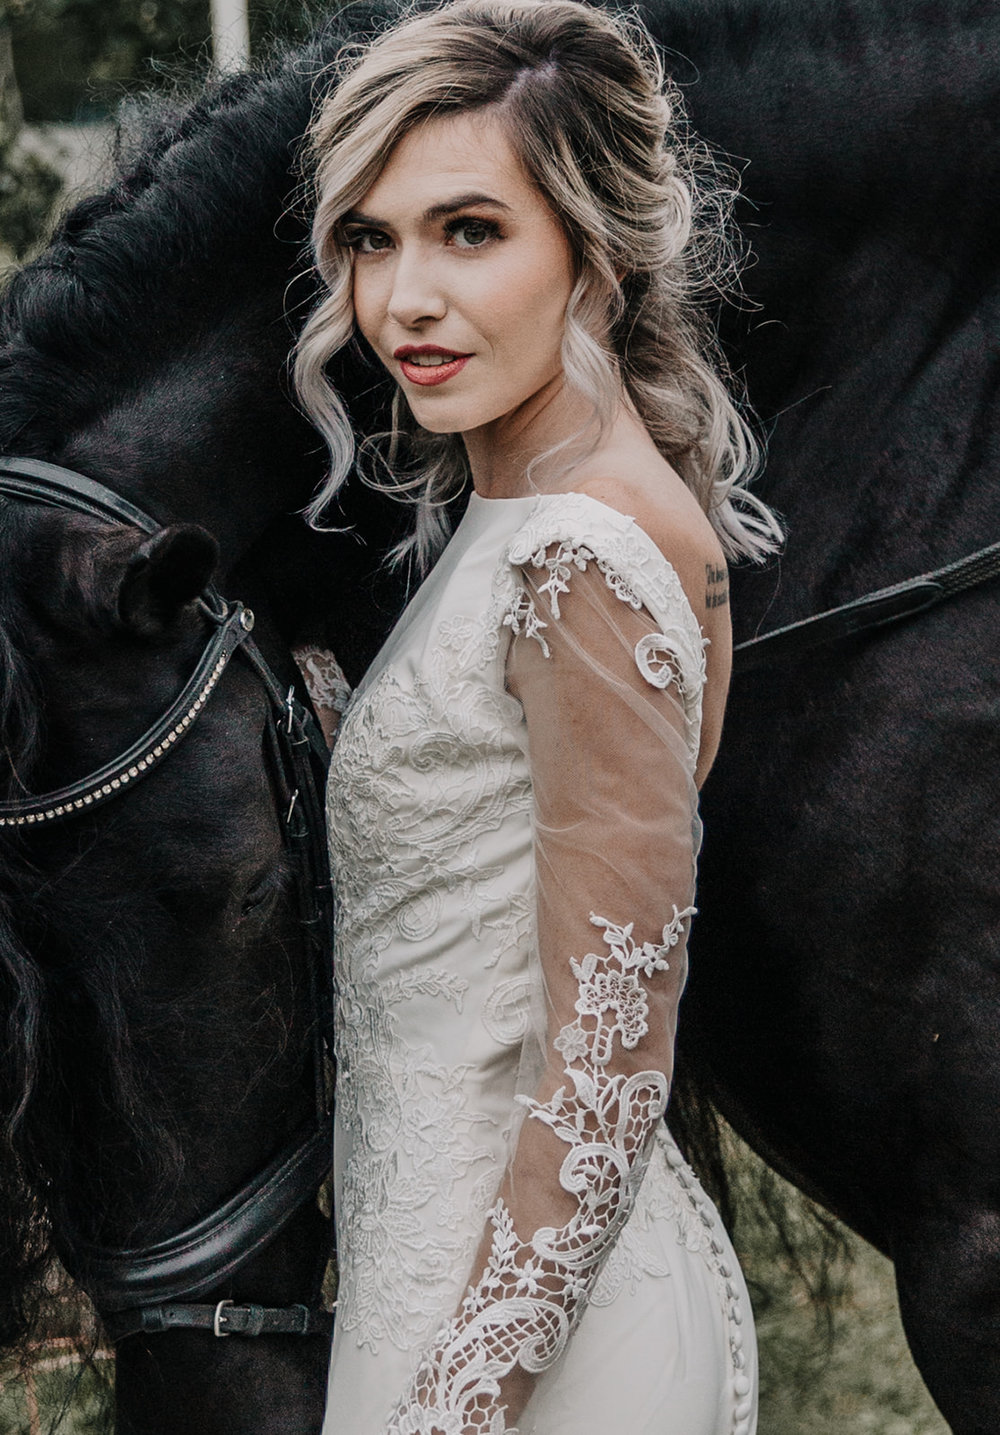 Romantic Jewel-Tone Wedding Feat. Friesian Horses | Styled Shoot. Desktop Image